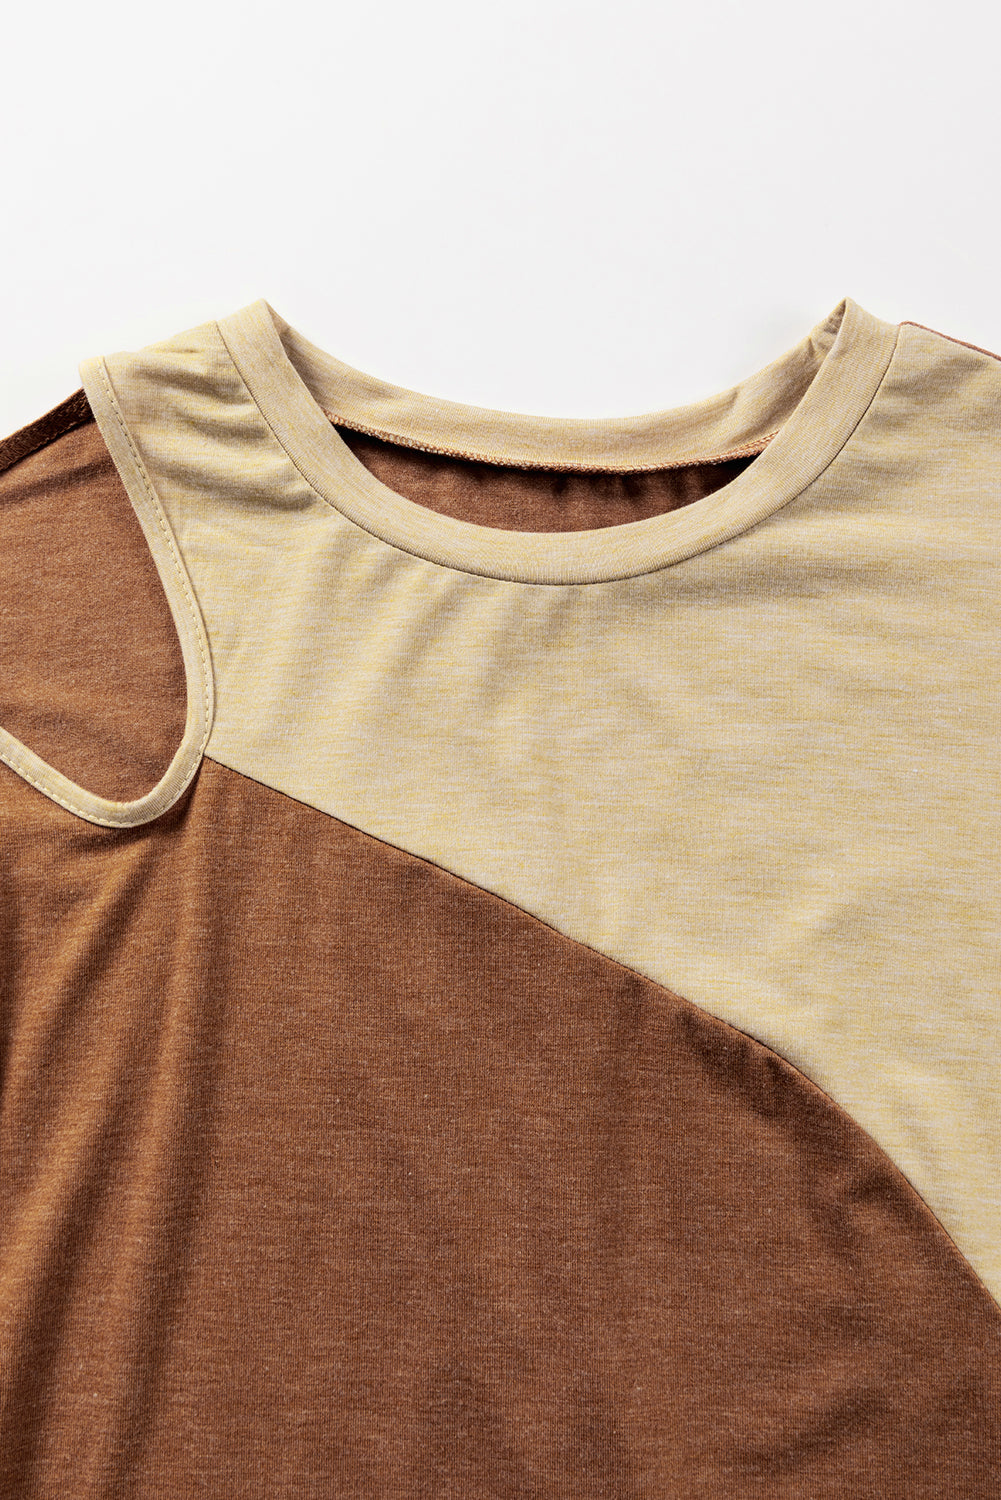 Smeđa majica kratkih rukava s asimetričnim izrezima u boji